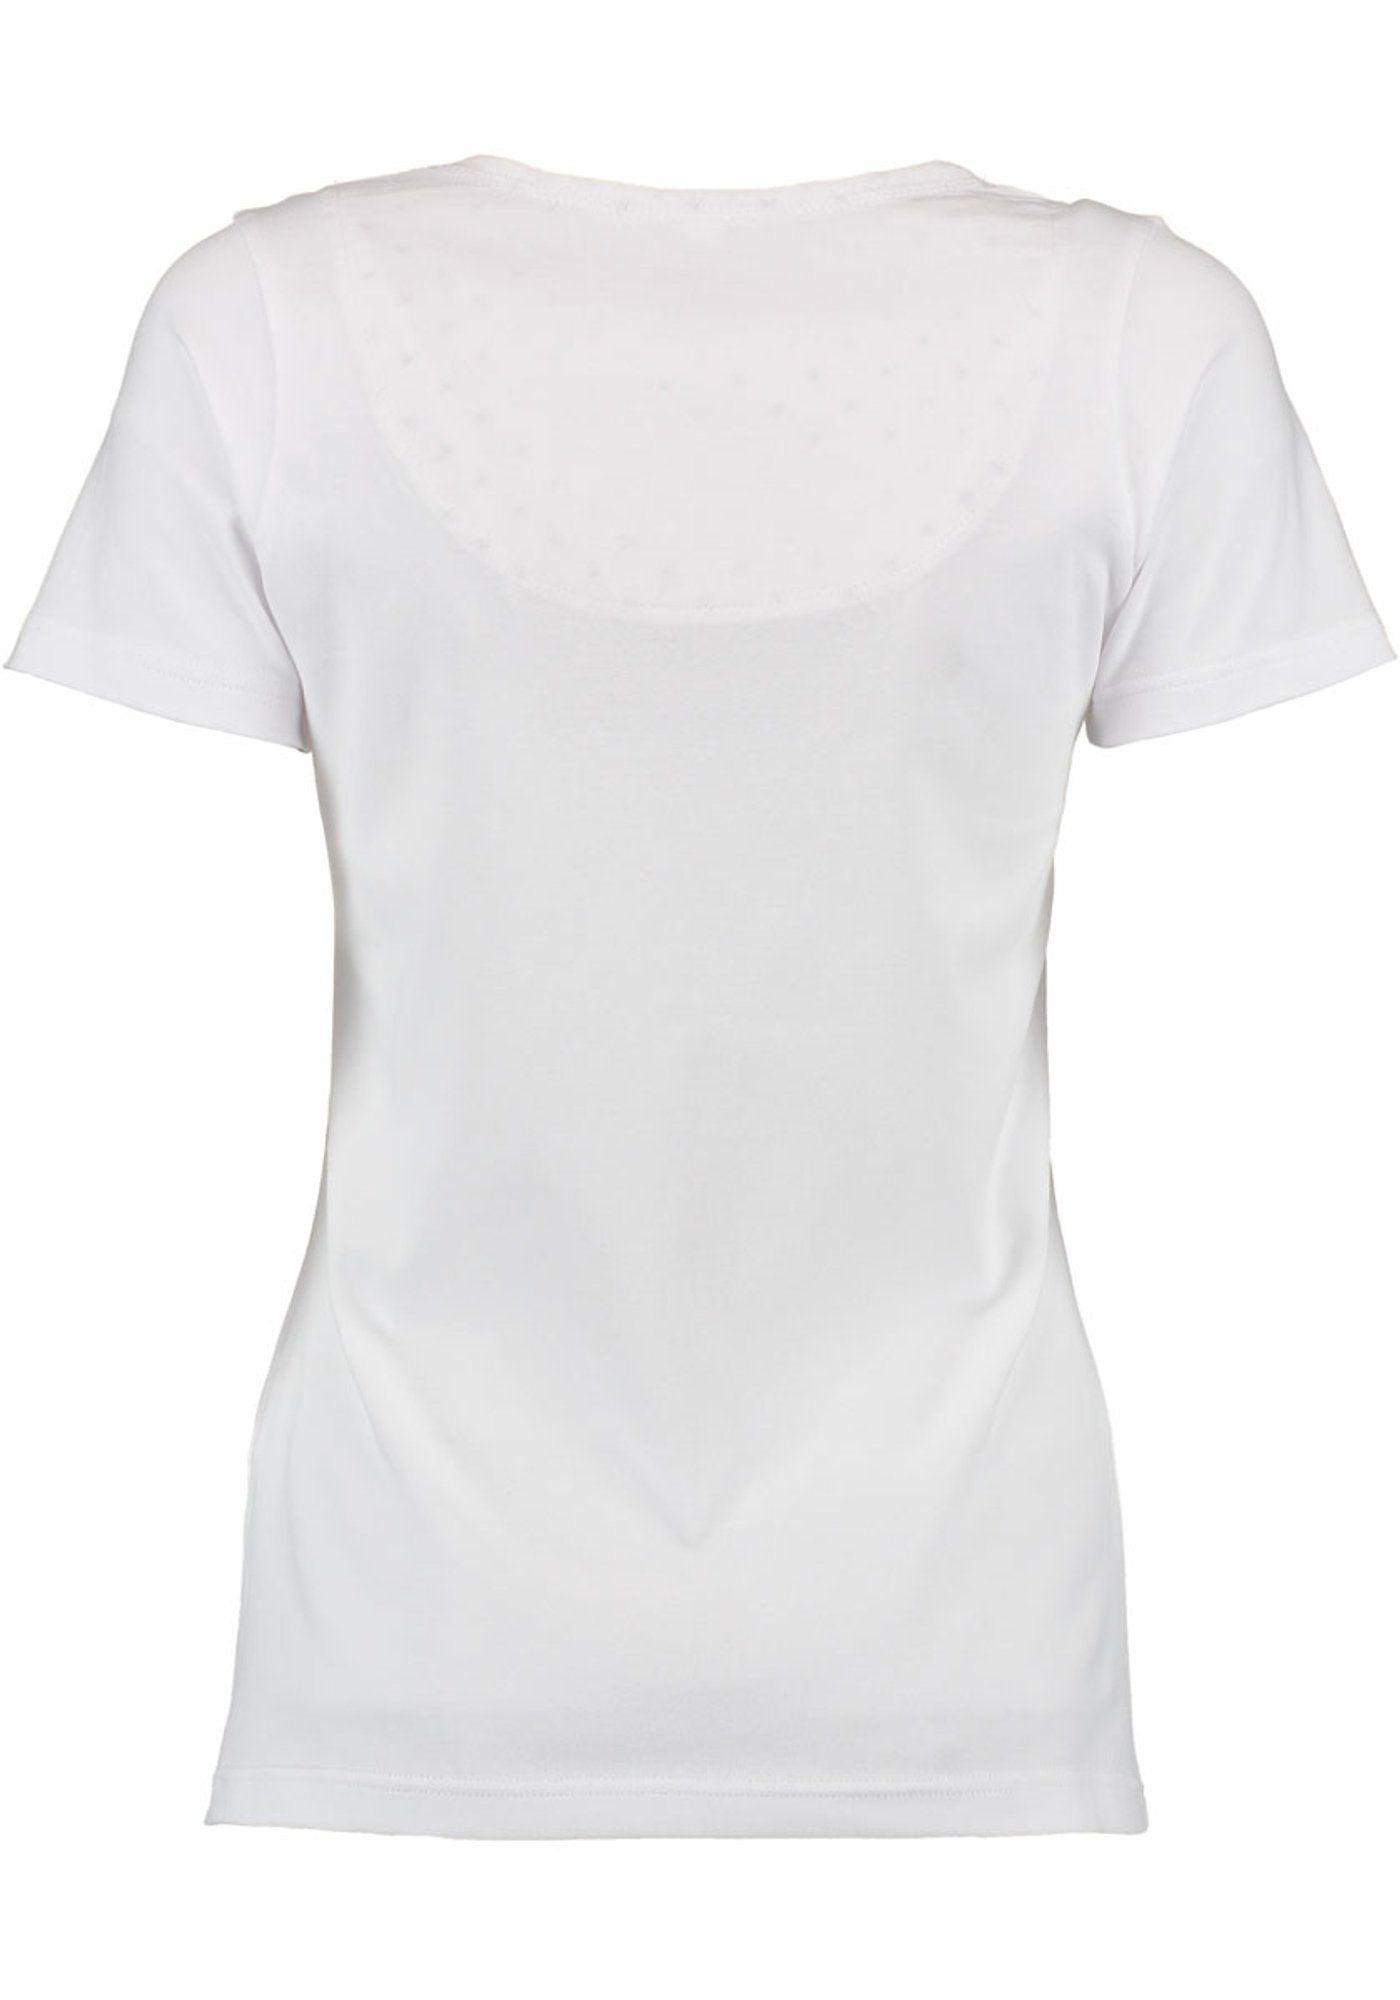 mit auf weiß Strass-Hirsch Trachtenshirt T-Shirt OS-Trachten Uginoy der Brust Kurzarm